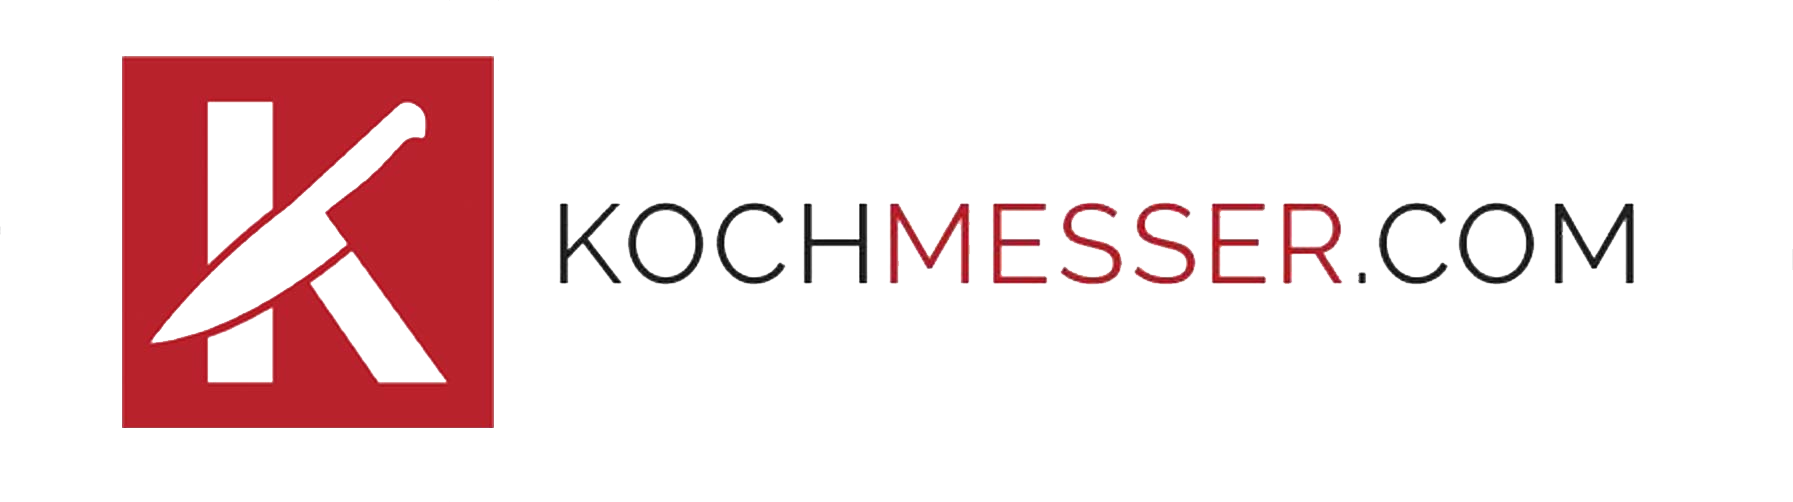 www.kochmesser.com